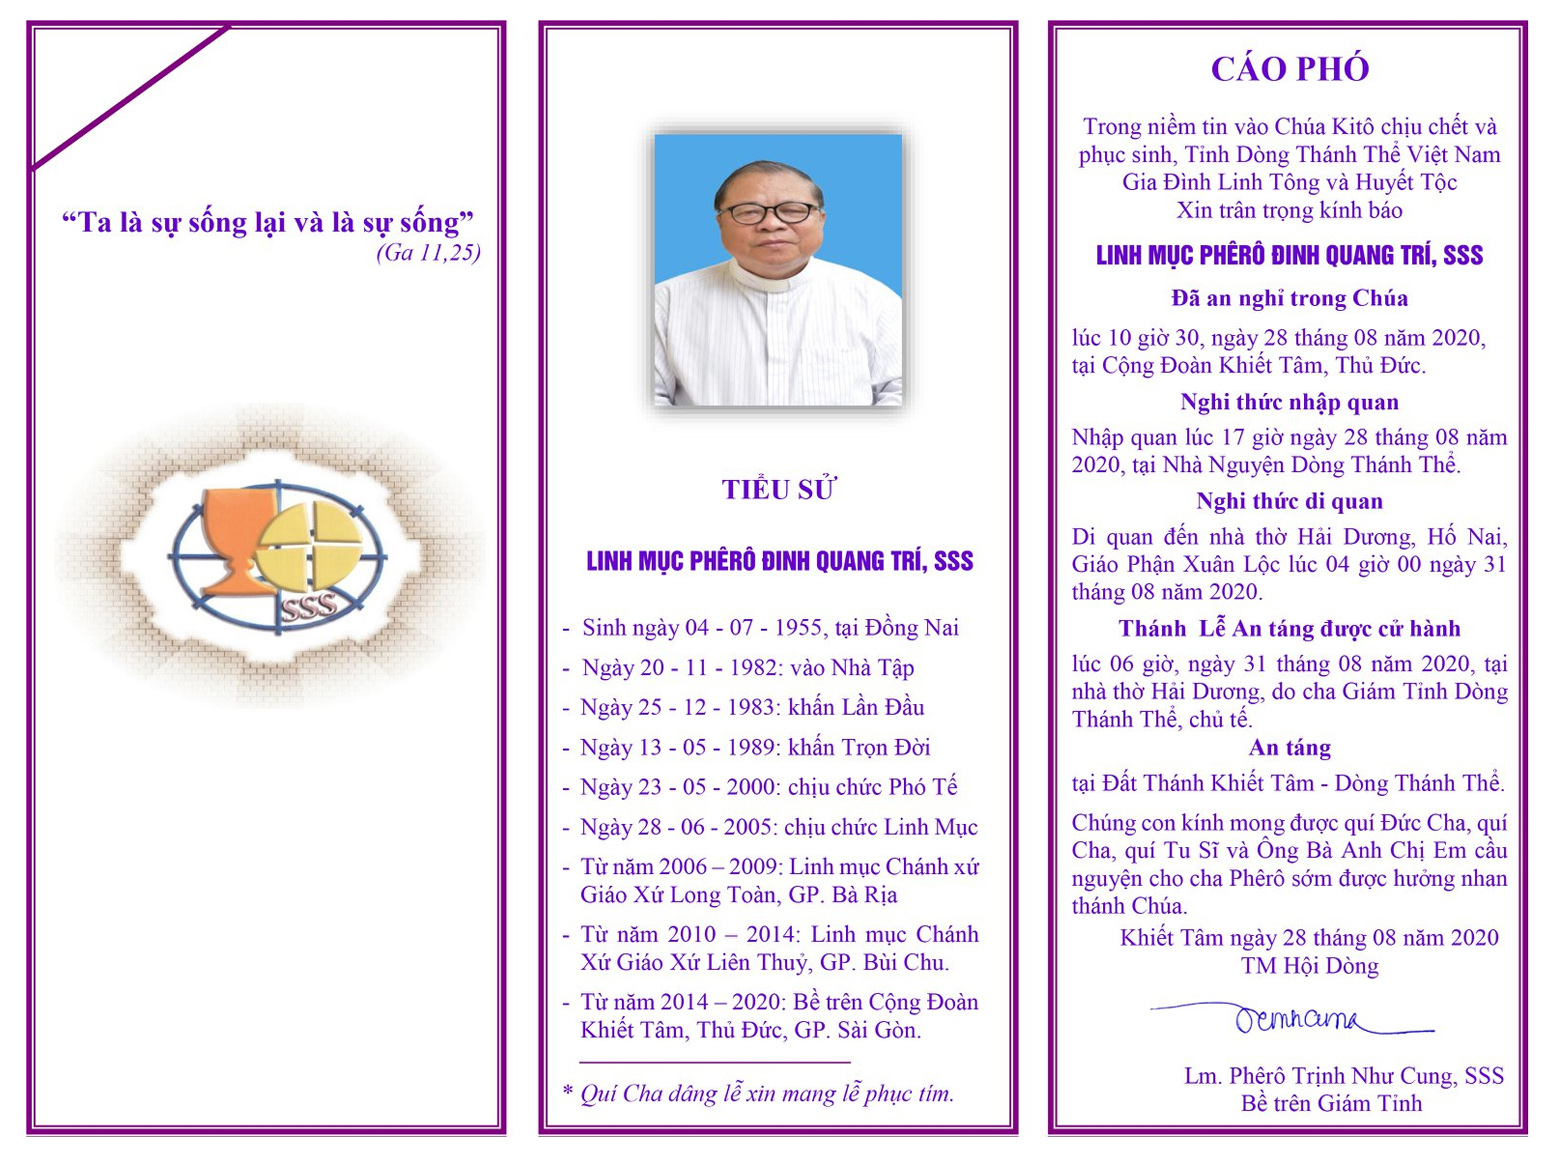 Cáo phó: Linh mục Phêrô Đinh Quang Trí (SSS) trở về Nhà Cha ngày 28-8-2020; Thánh lễ an táng lúc 6g sáng thứ Hai 31-8-2020